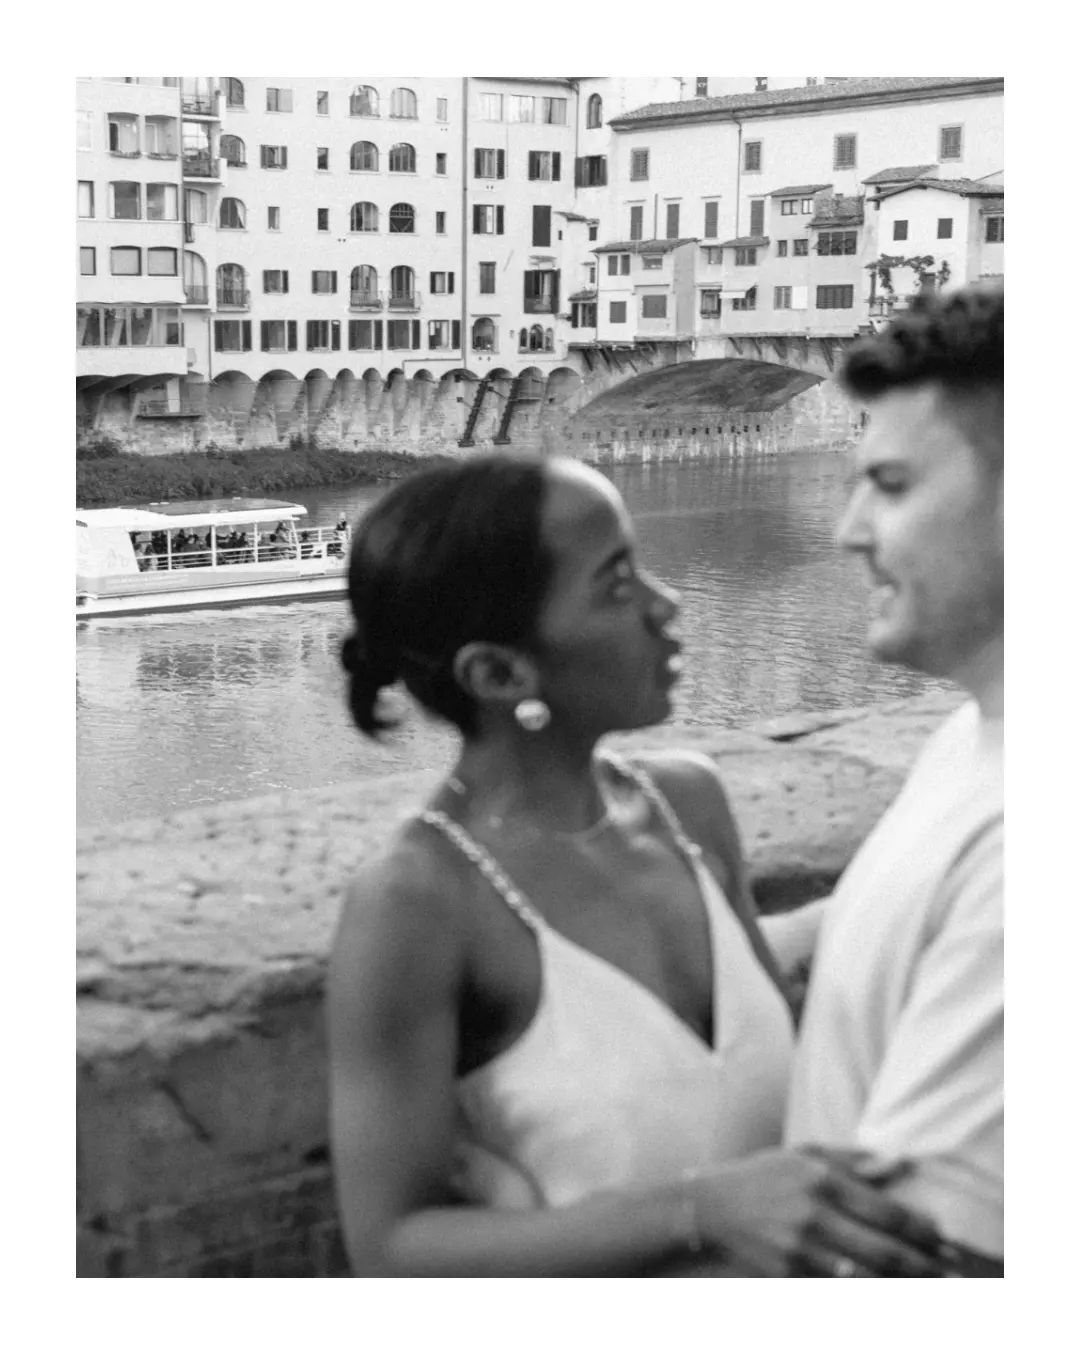 Pre Wedding 💫
.
.
#preweeding #preweedingfoto #preweddingphptography #matrimonio2025 #florenceitaly #florence #florenceitaly🇮🇹 #tuscany
#couplesession #couplesessionphotographer #tuscanyweddingphotography #photocouple #photocouples #fotografia #ph